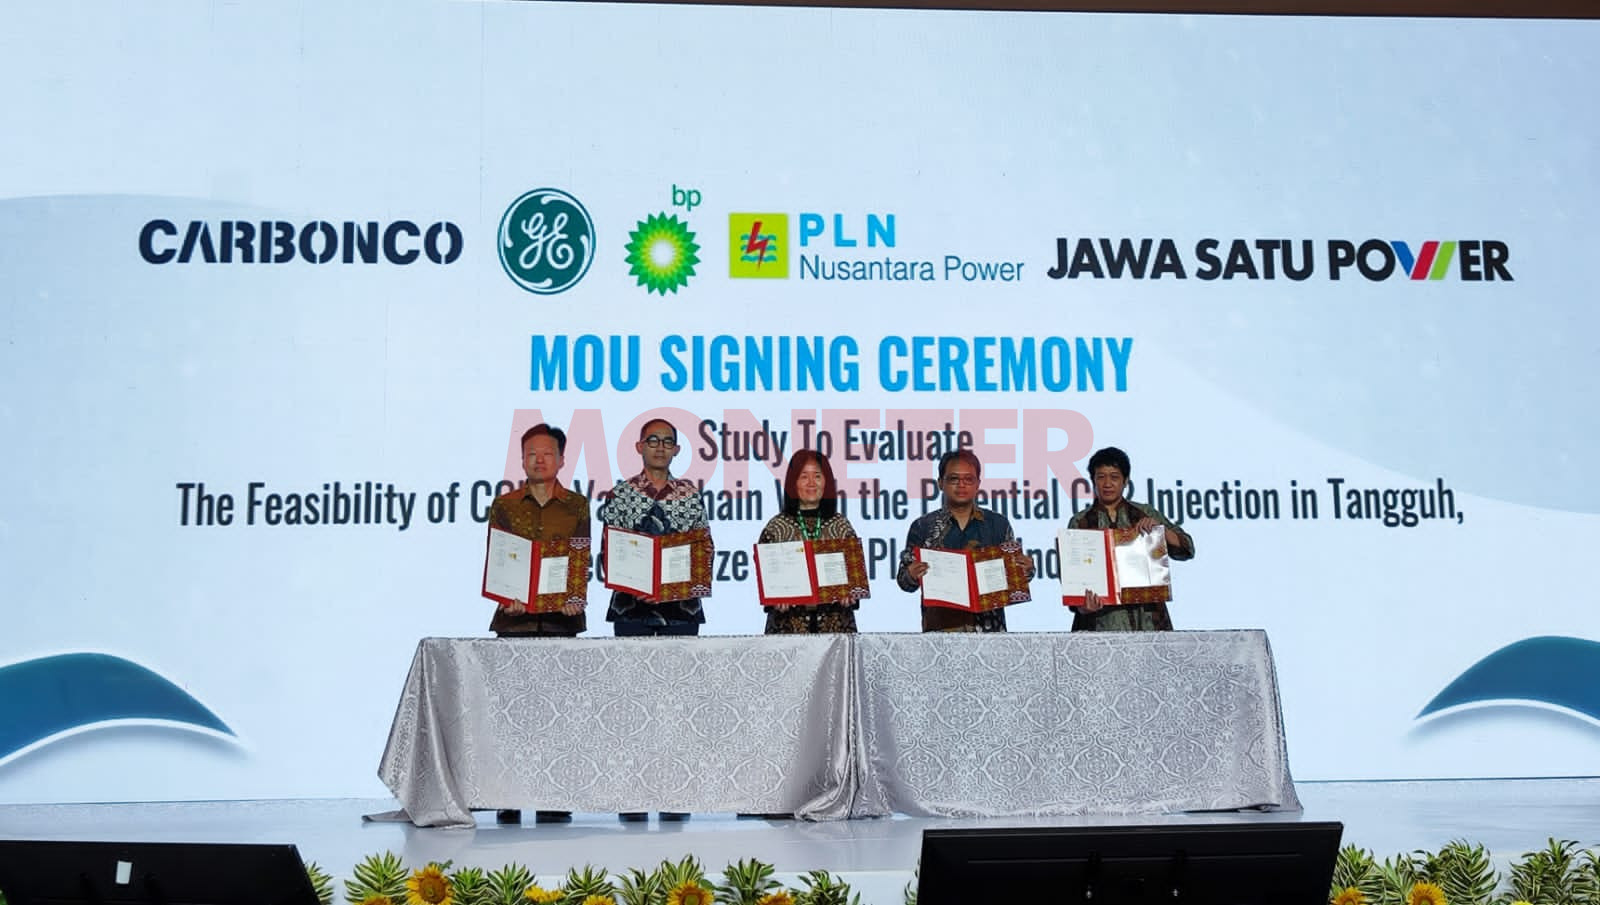 GE Vernova, CARBONCO, bp, PLN Nusantara dan Jawa 1 Akan Kembangkan Studi Kelayakan Value Chain Dekarbonisasi PLTG di Indonesia